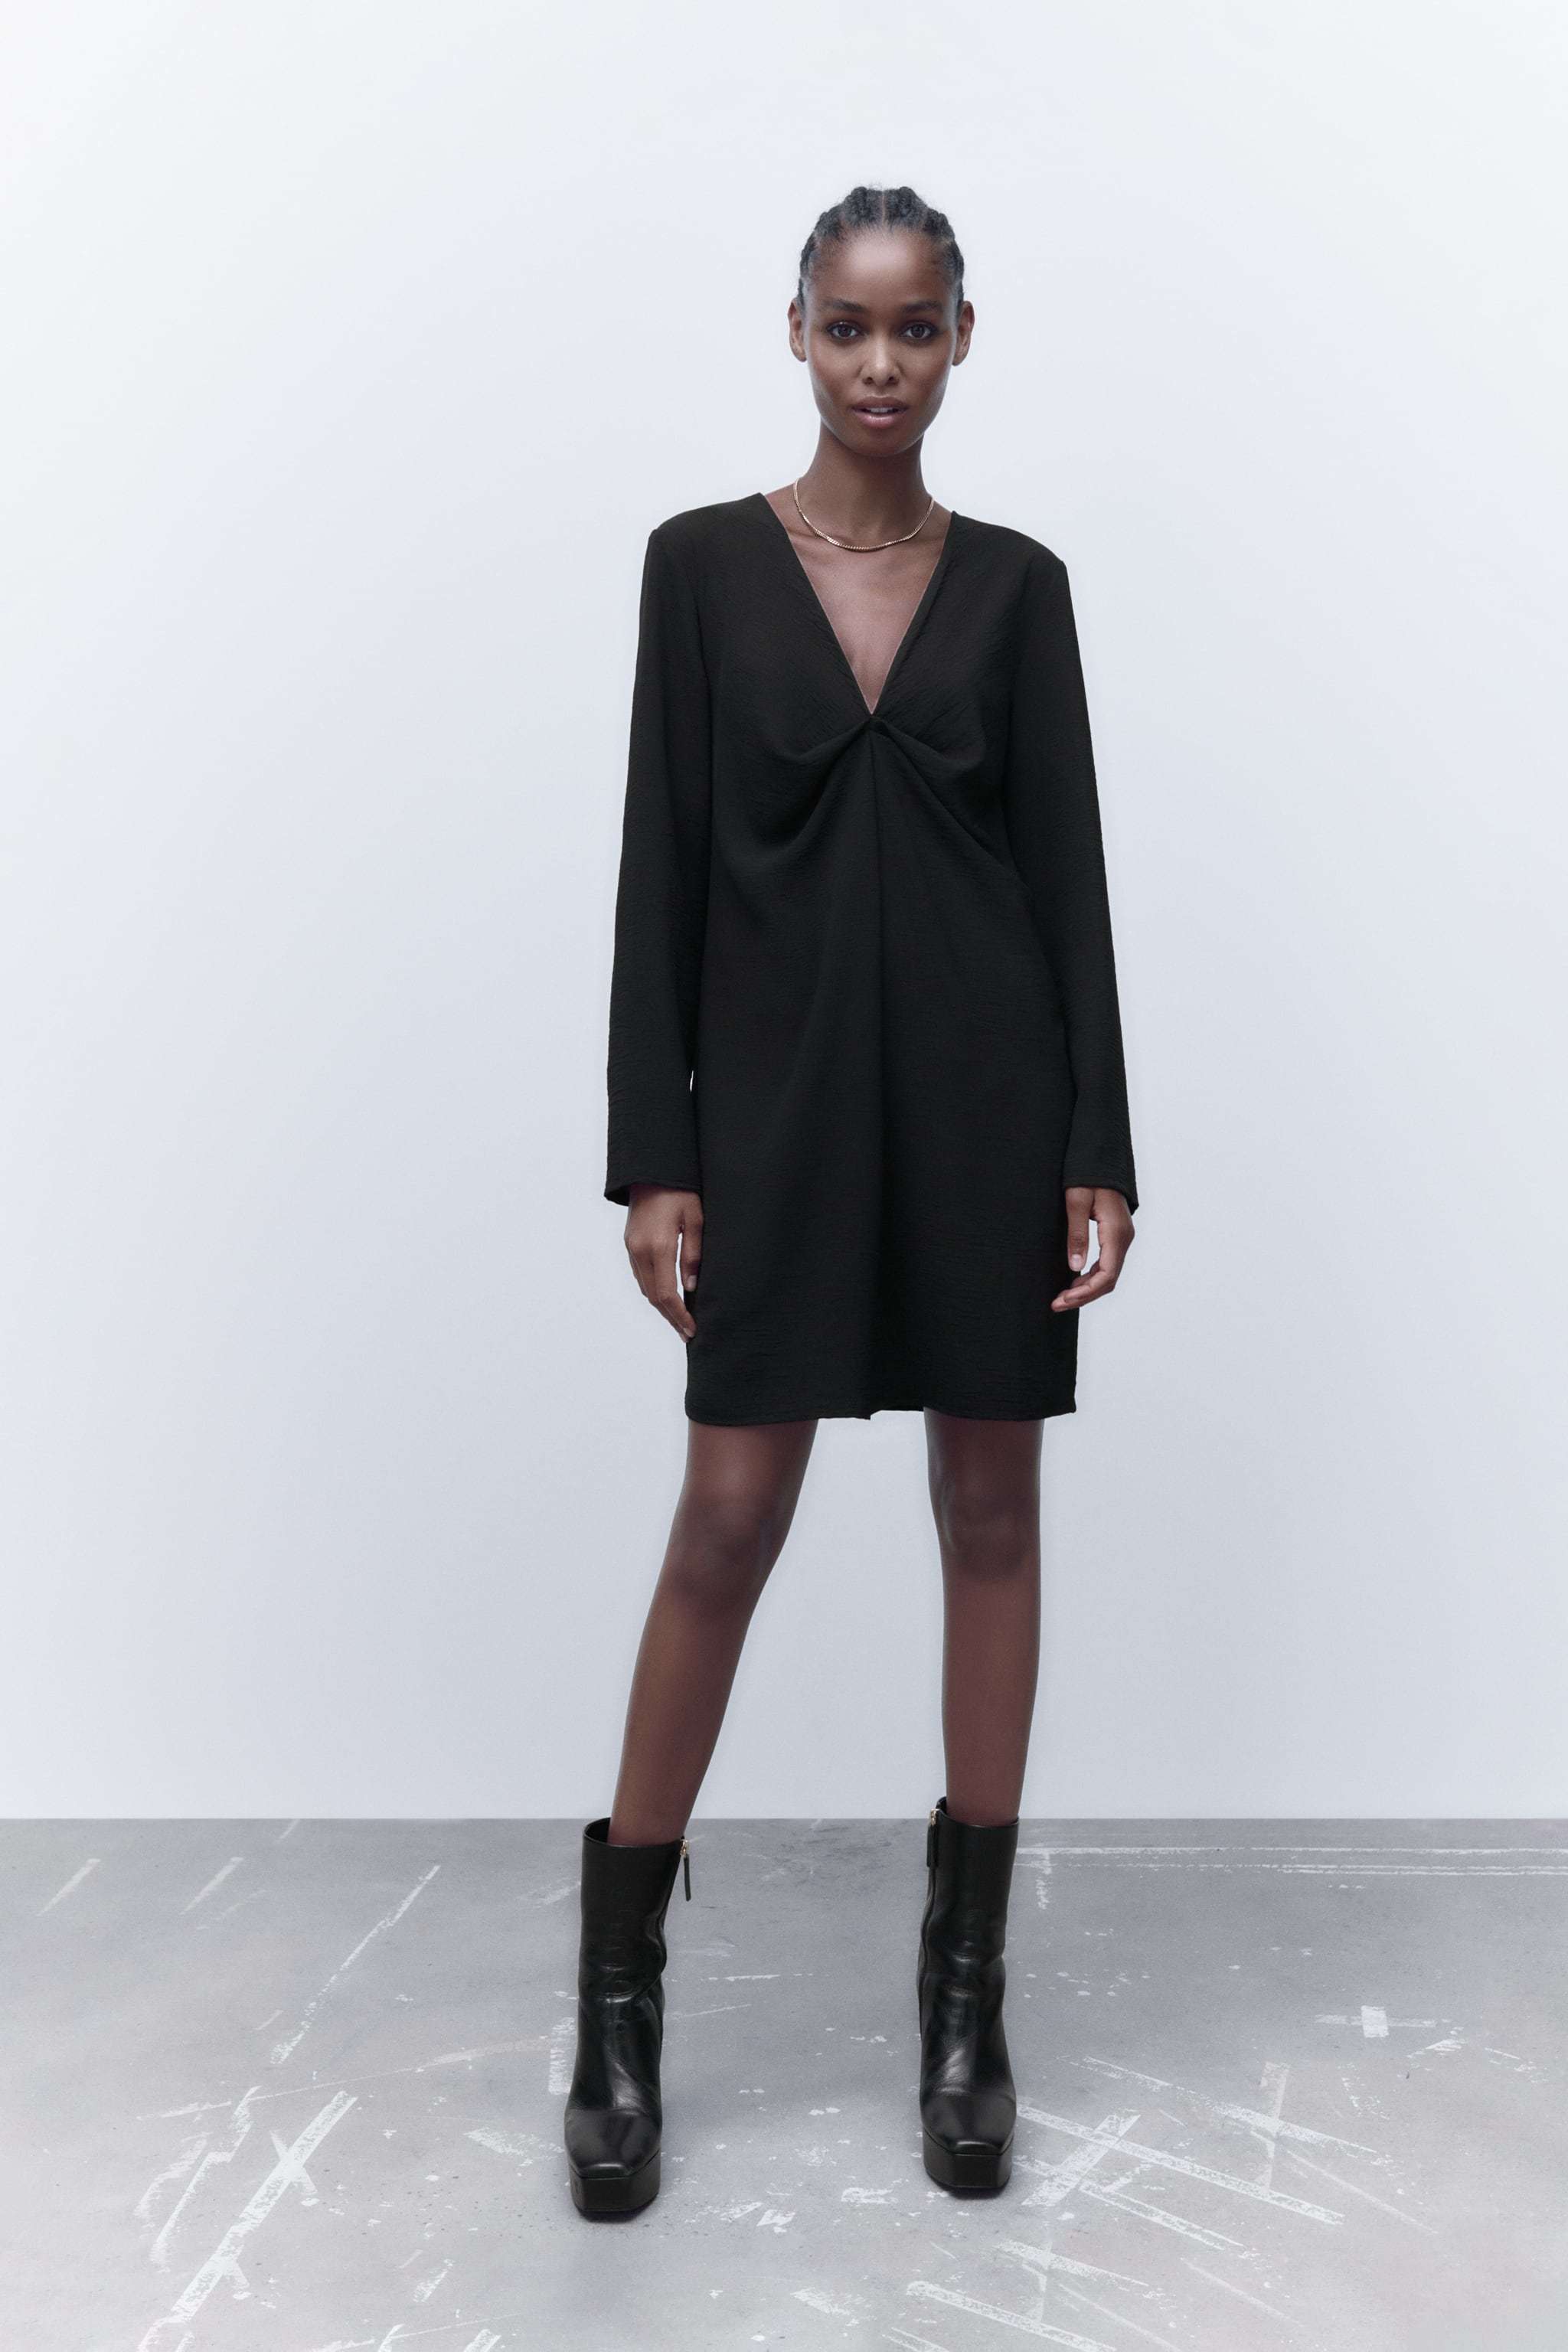 Vestido negro con cuello en uve, de Zara.